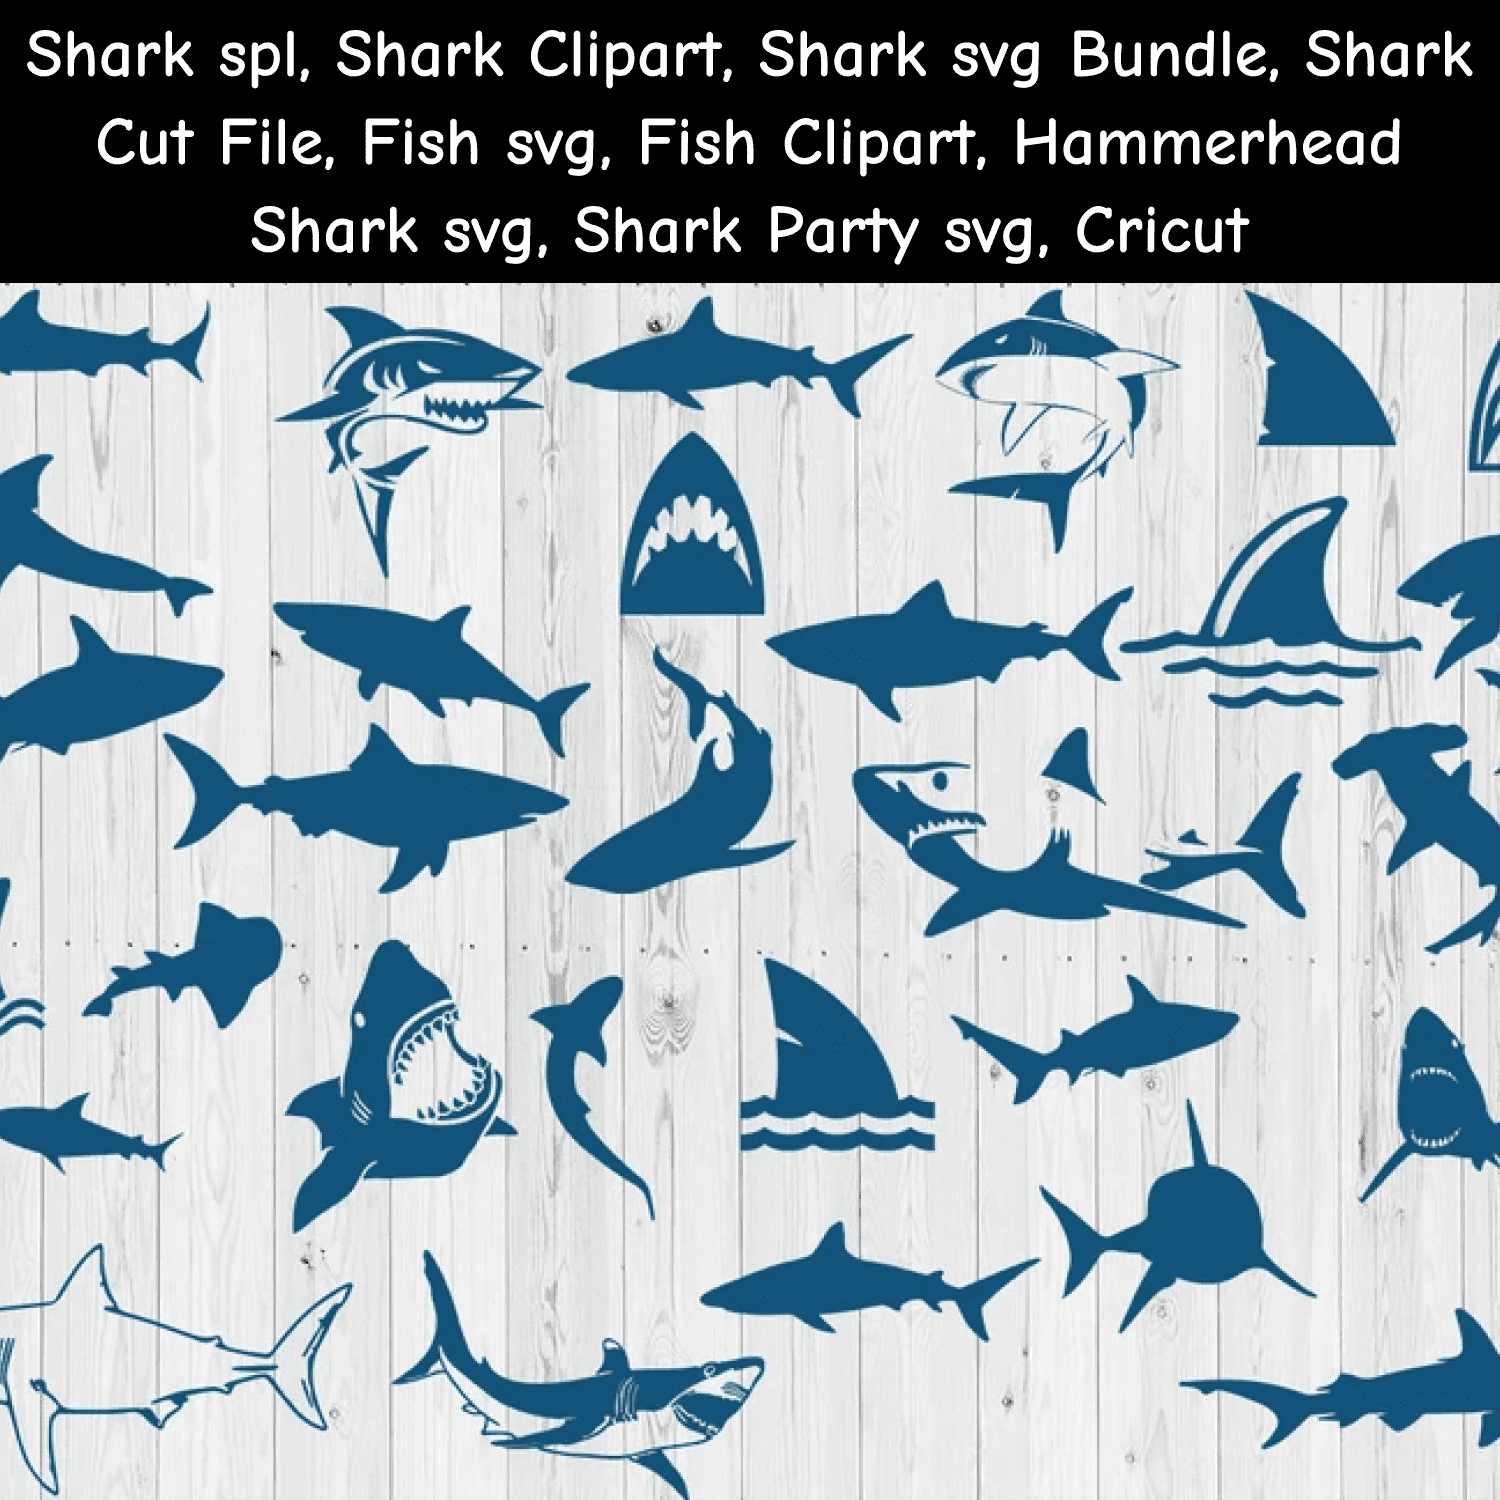 Sharks svg Bundle.